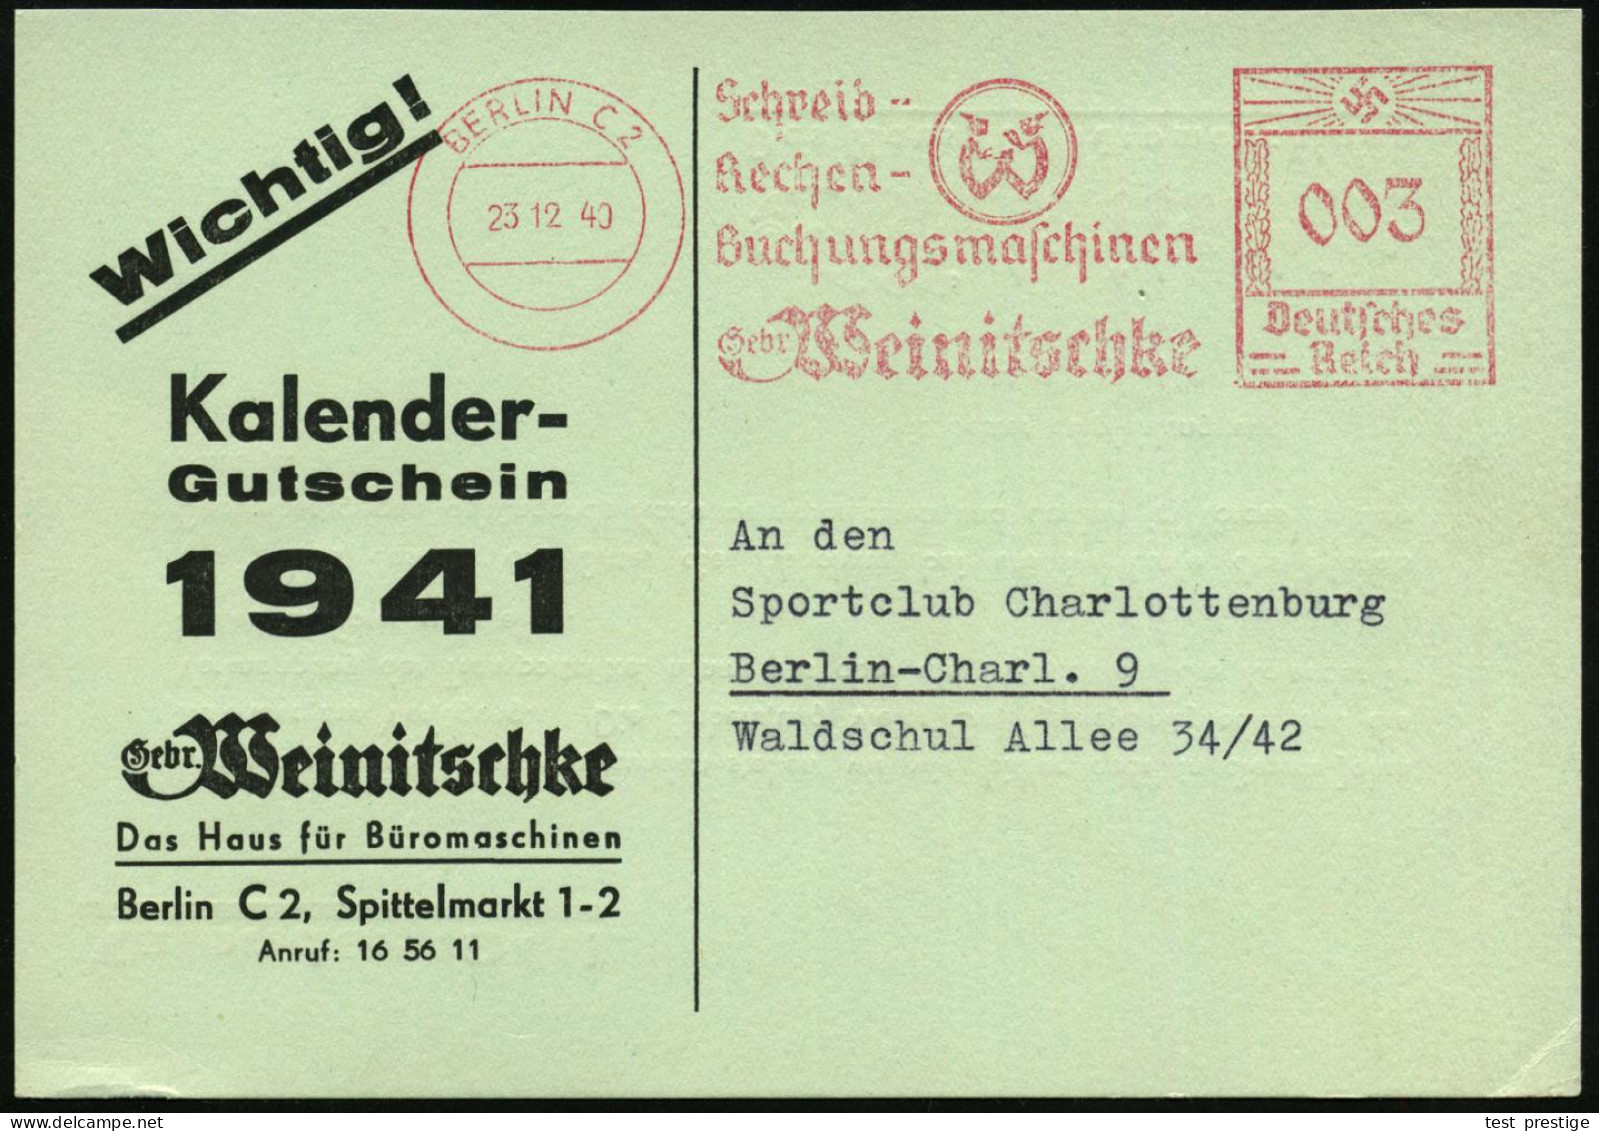 BERLIN C2/ Schreib-/ Rechen-/ Buchungsmaschinen/ Gebr.Weinitschke 1940 (23.12.) AFS Francotyp (Logo) Auf Reklame-Kt. Bet - Informatique